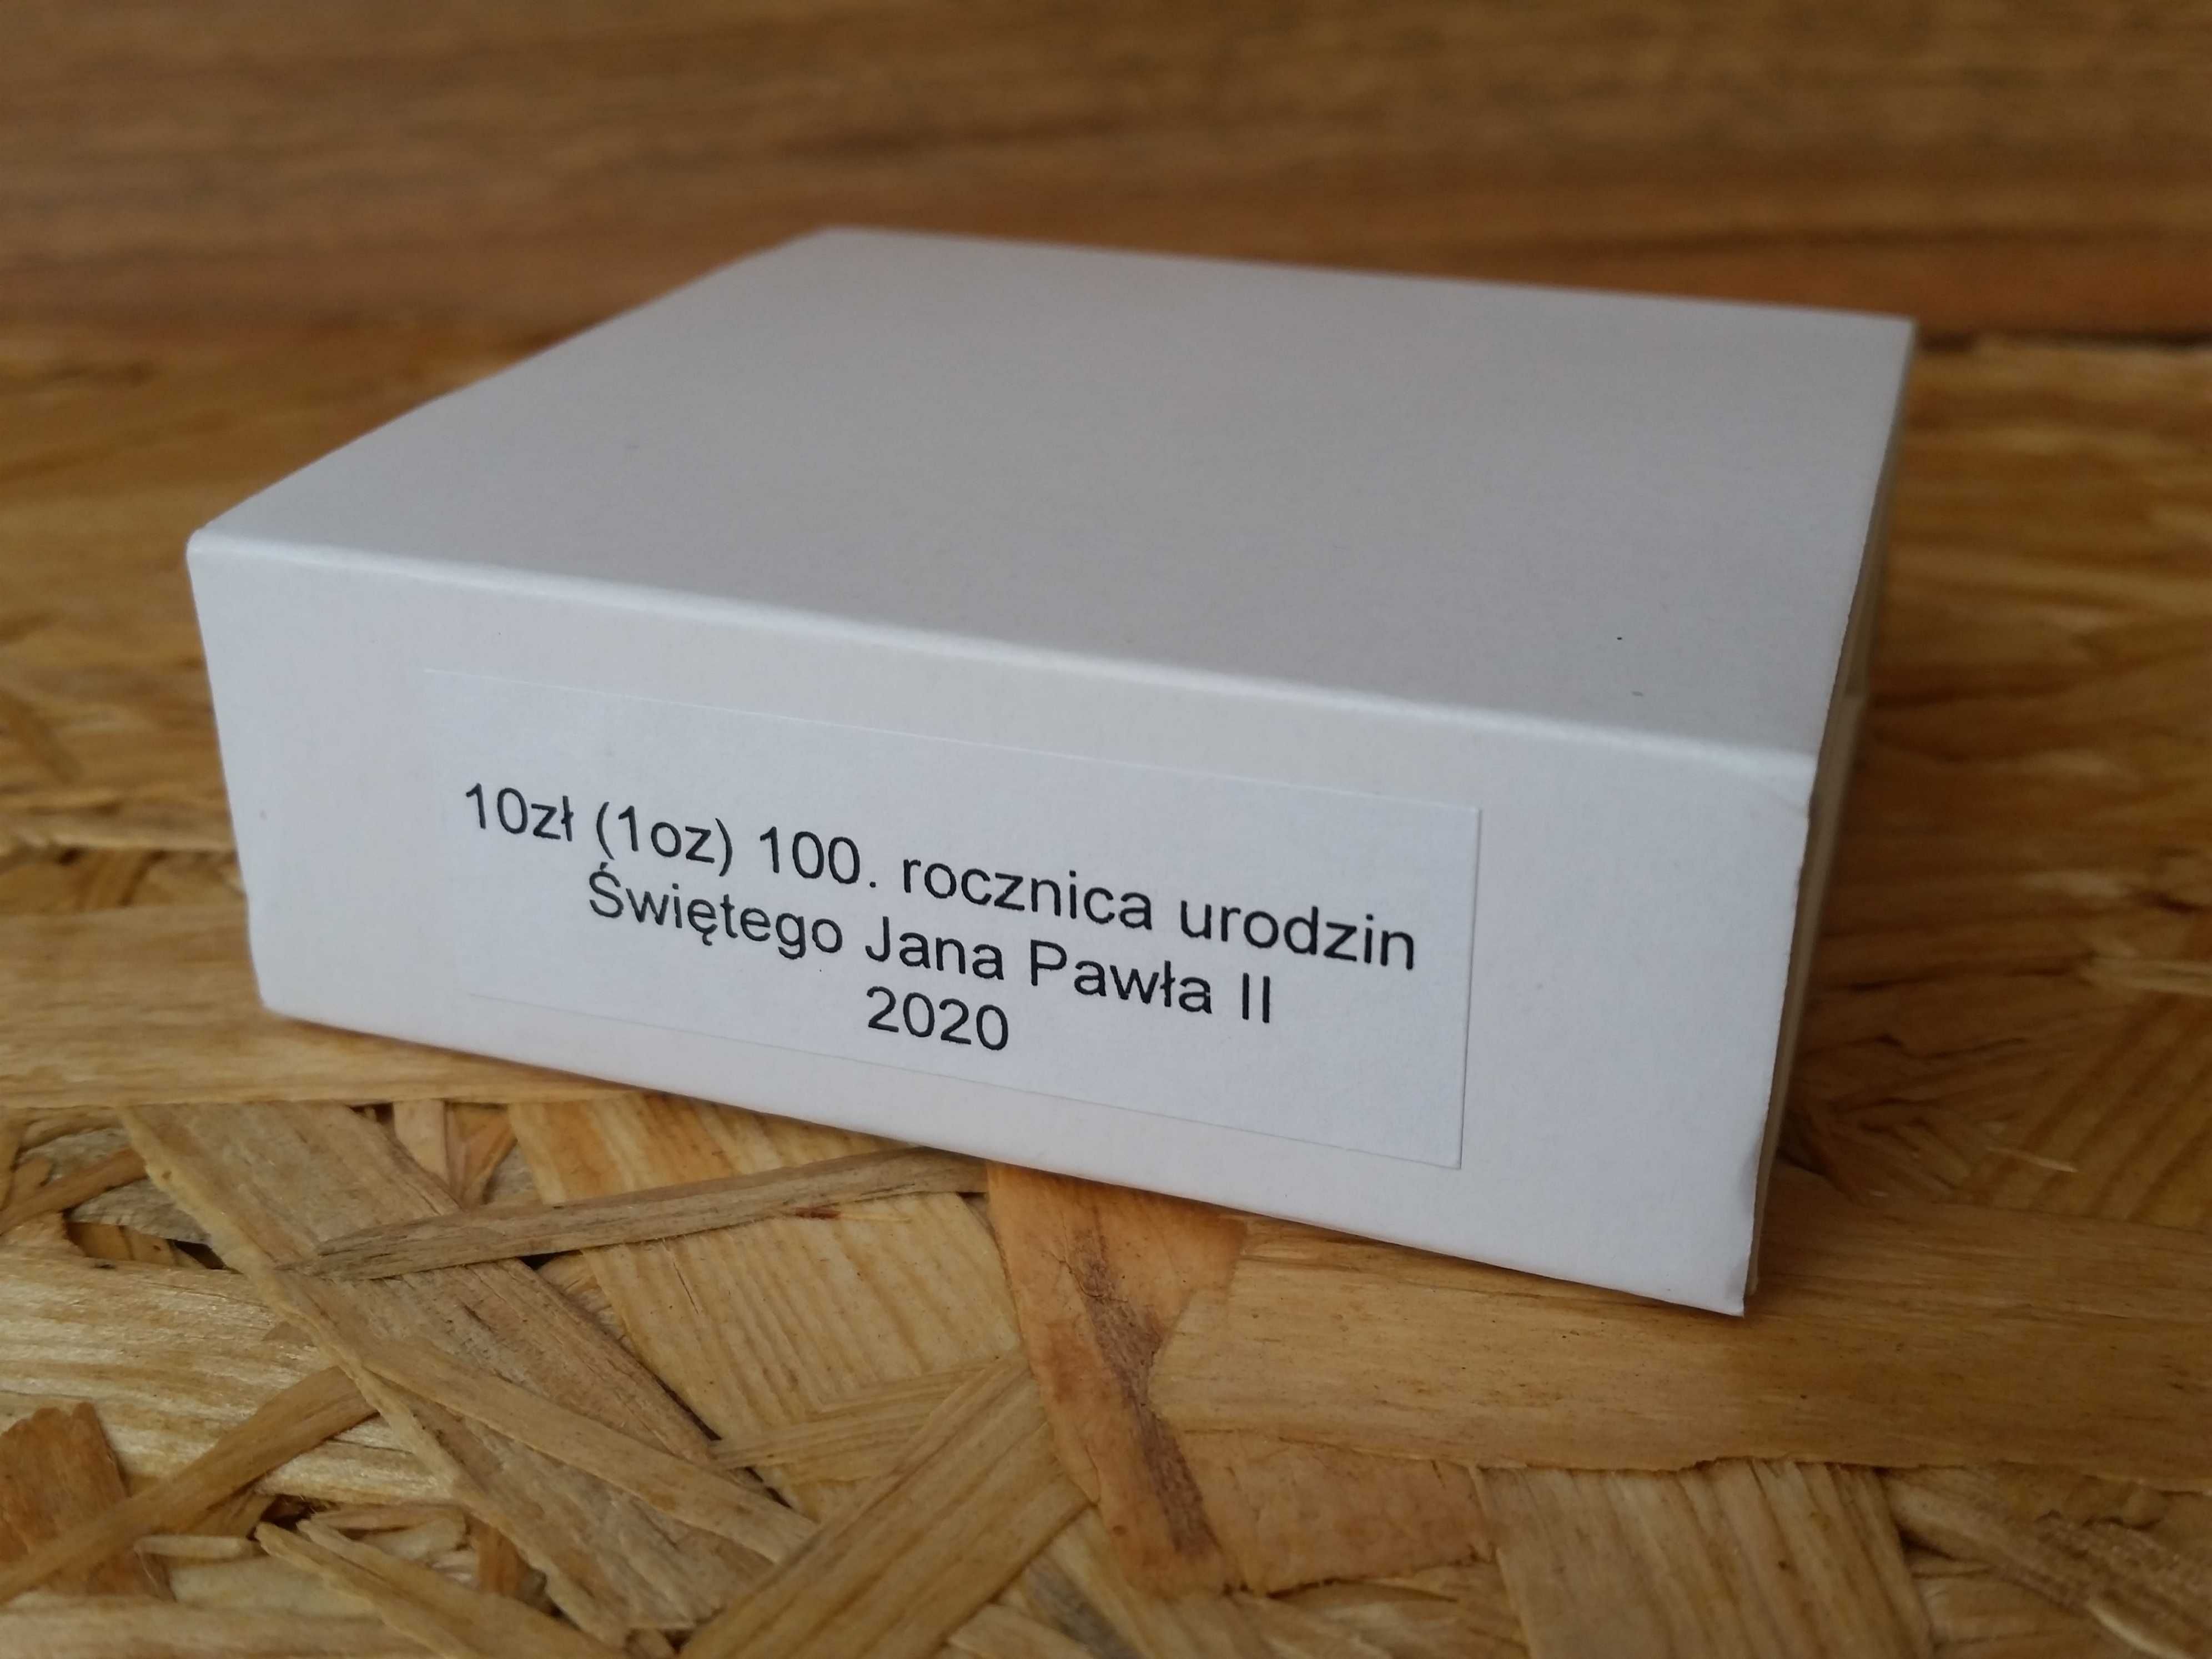 10 zł 100 Rocznica Urodzin Świętego Jana Pawła II 2020